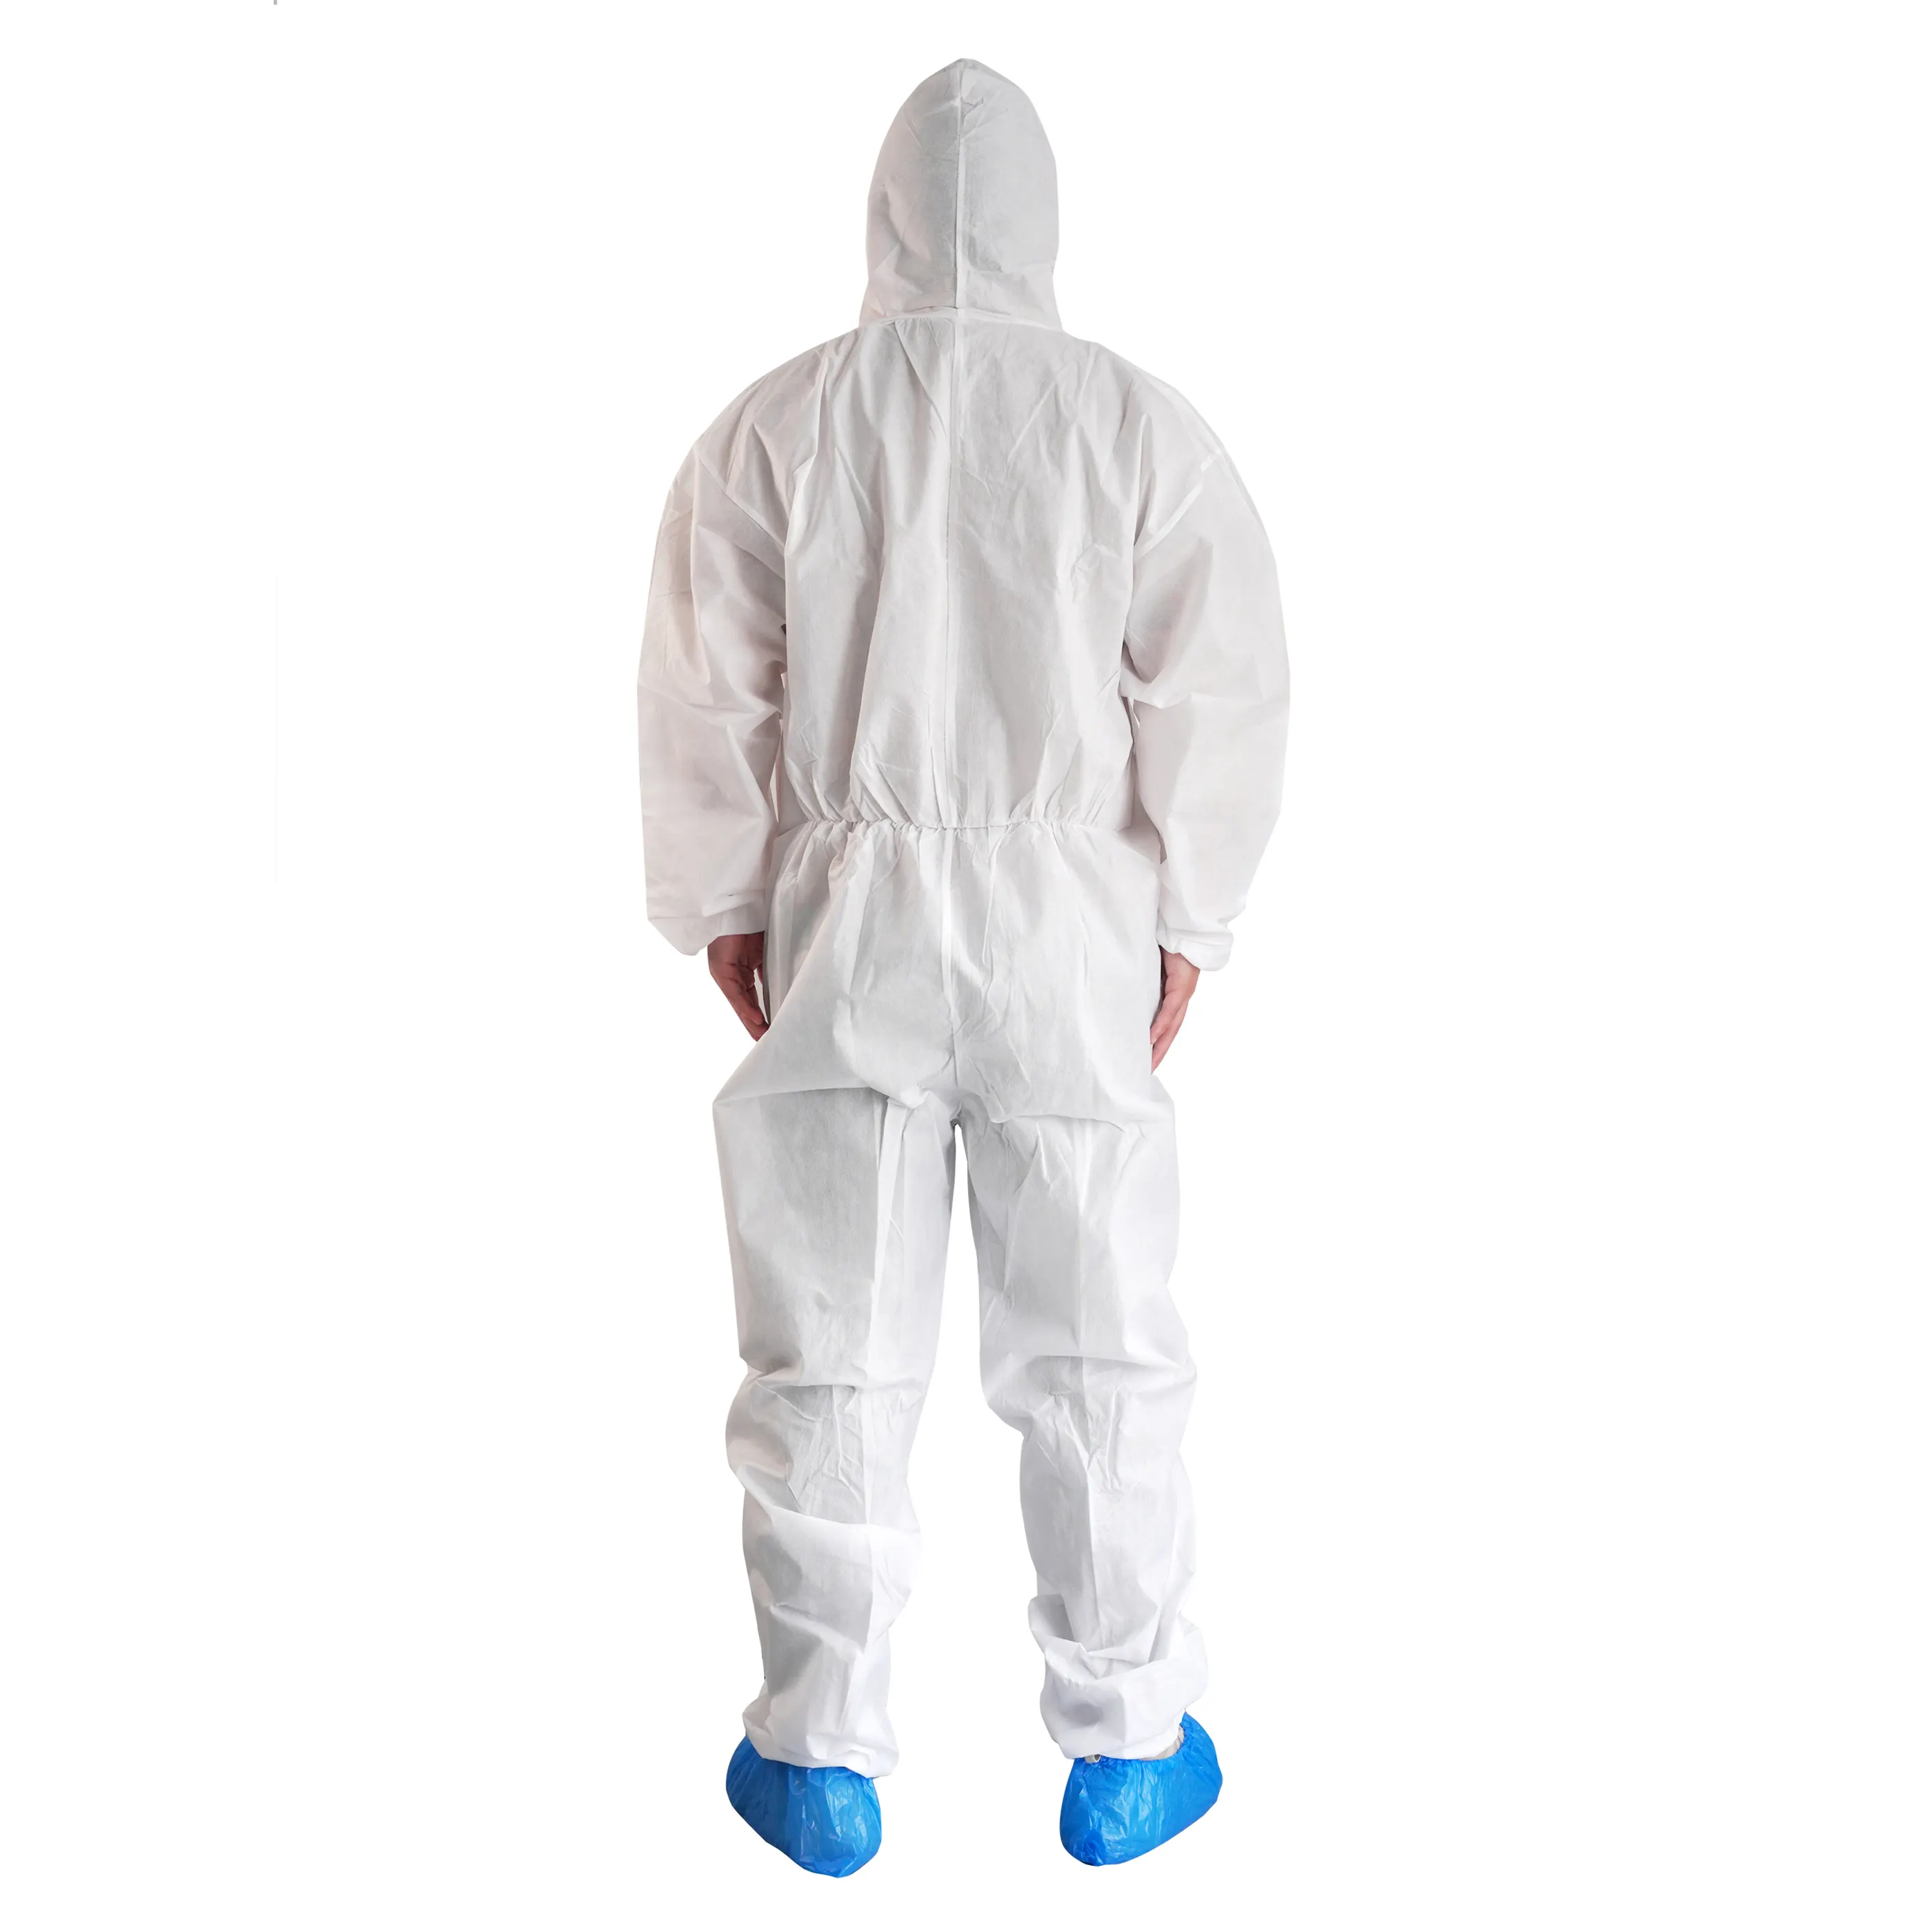 بيع بالجملة ملابس عمل بيضاء عالية الجودة سميكة مضادة للبكتيريا مع المعطف الأكثر مبيعًا في المصنع